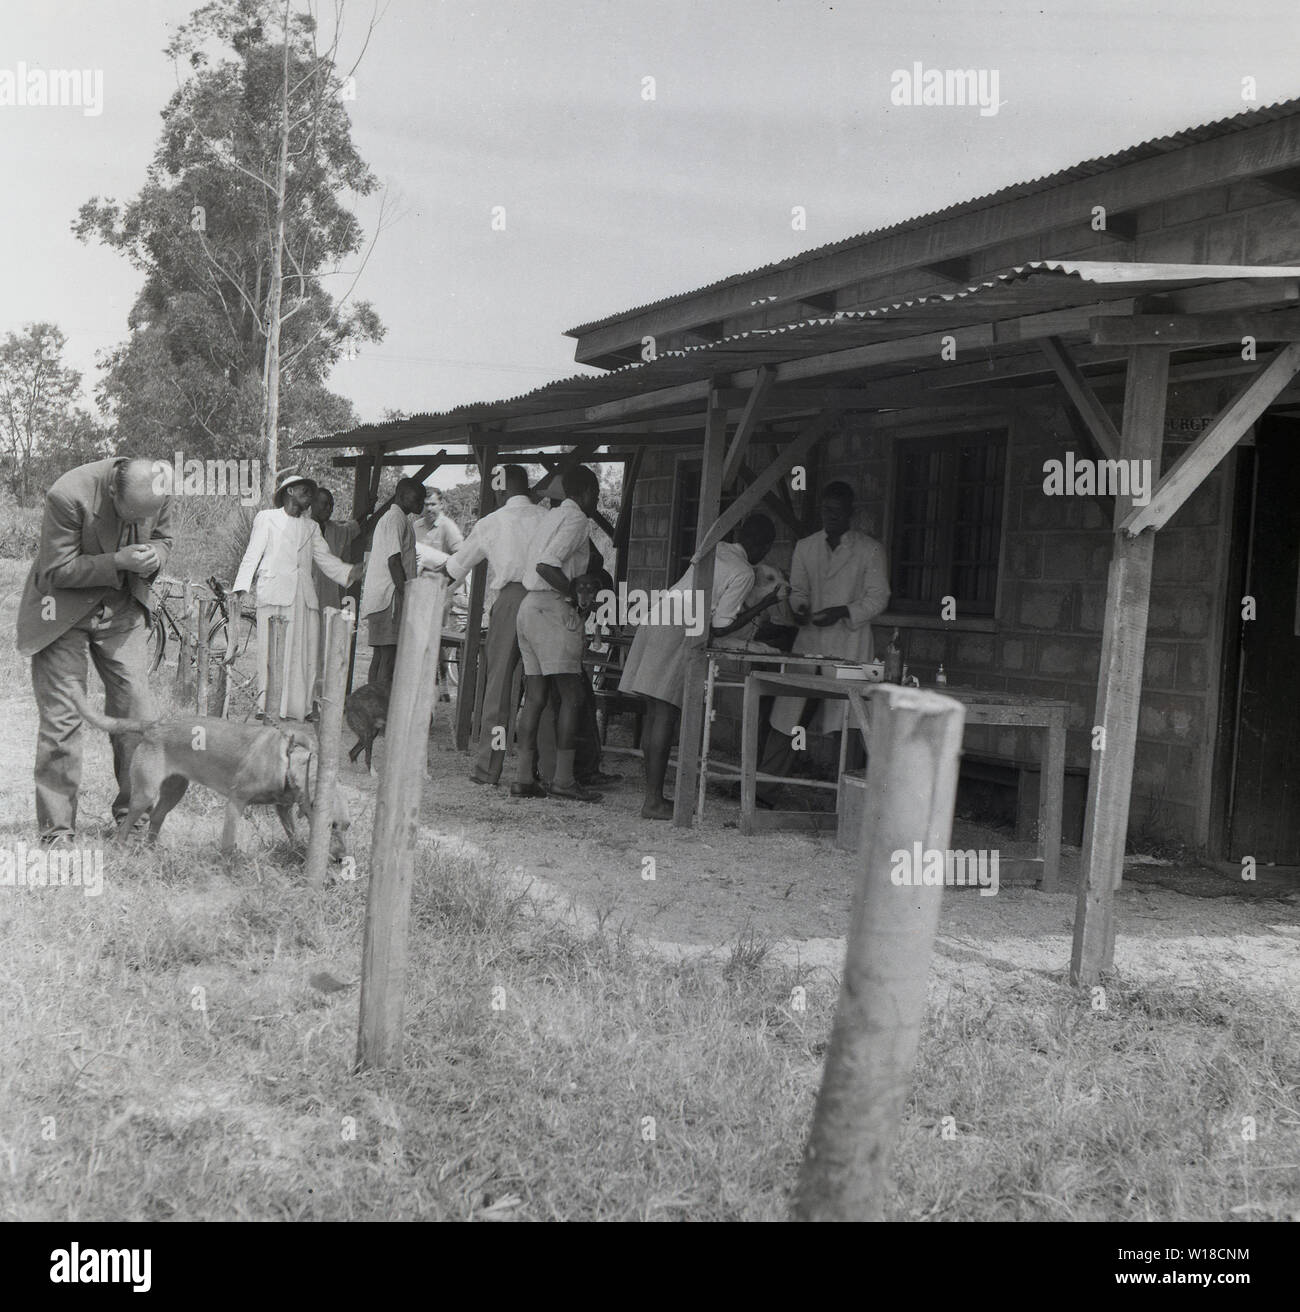 1960, historische, im ländlichen Uganda, der lokalen Bevölkerung die Teilnahme an einer Tollwut Control Center oder Klinik, wo Einheimische und wilde Hunde geimpft werden, um die Ausbreitung der Tollwut zu verhindern, ist eine schwere Krankheit für den Menschen durch den Kontakt mit infizierten Hunden, insbesondere in Afrika. Stockfoto